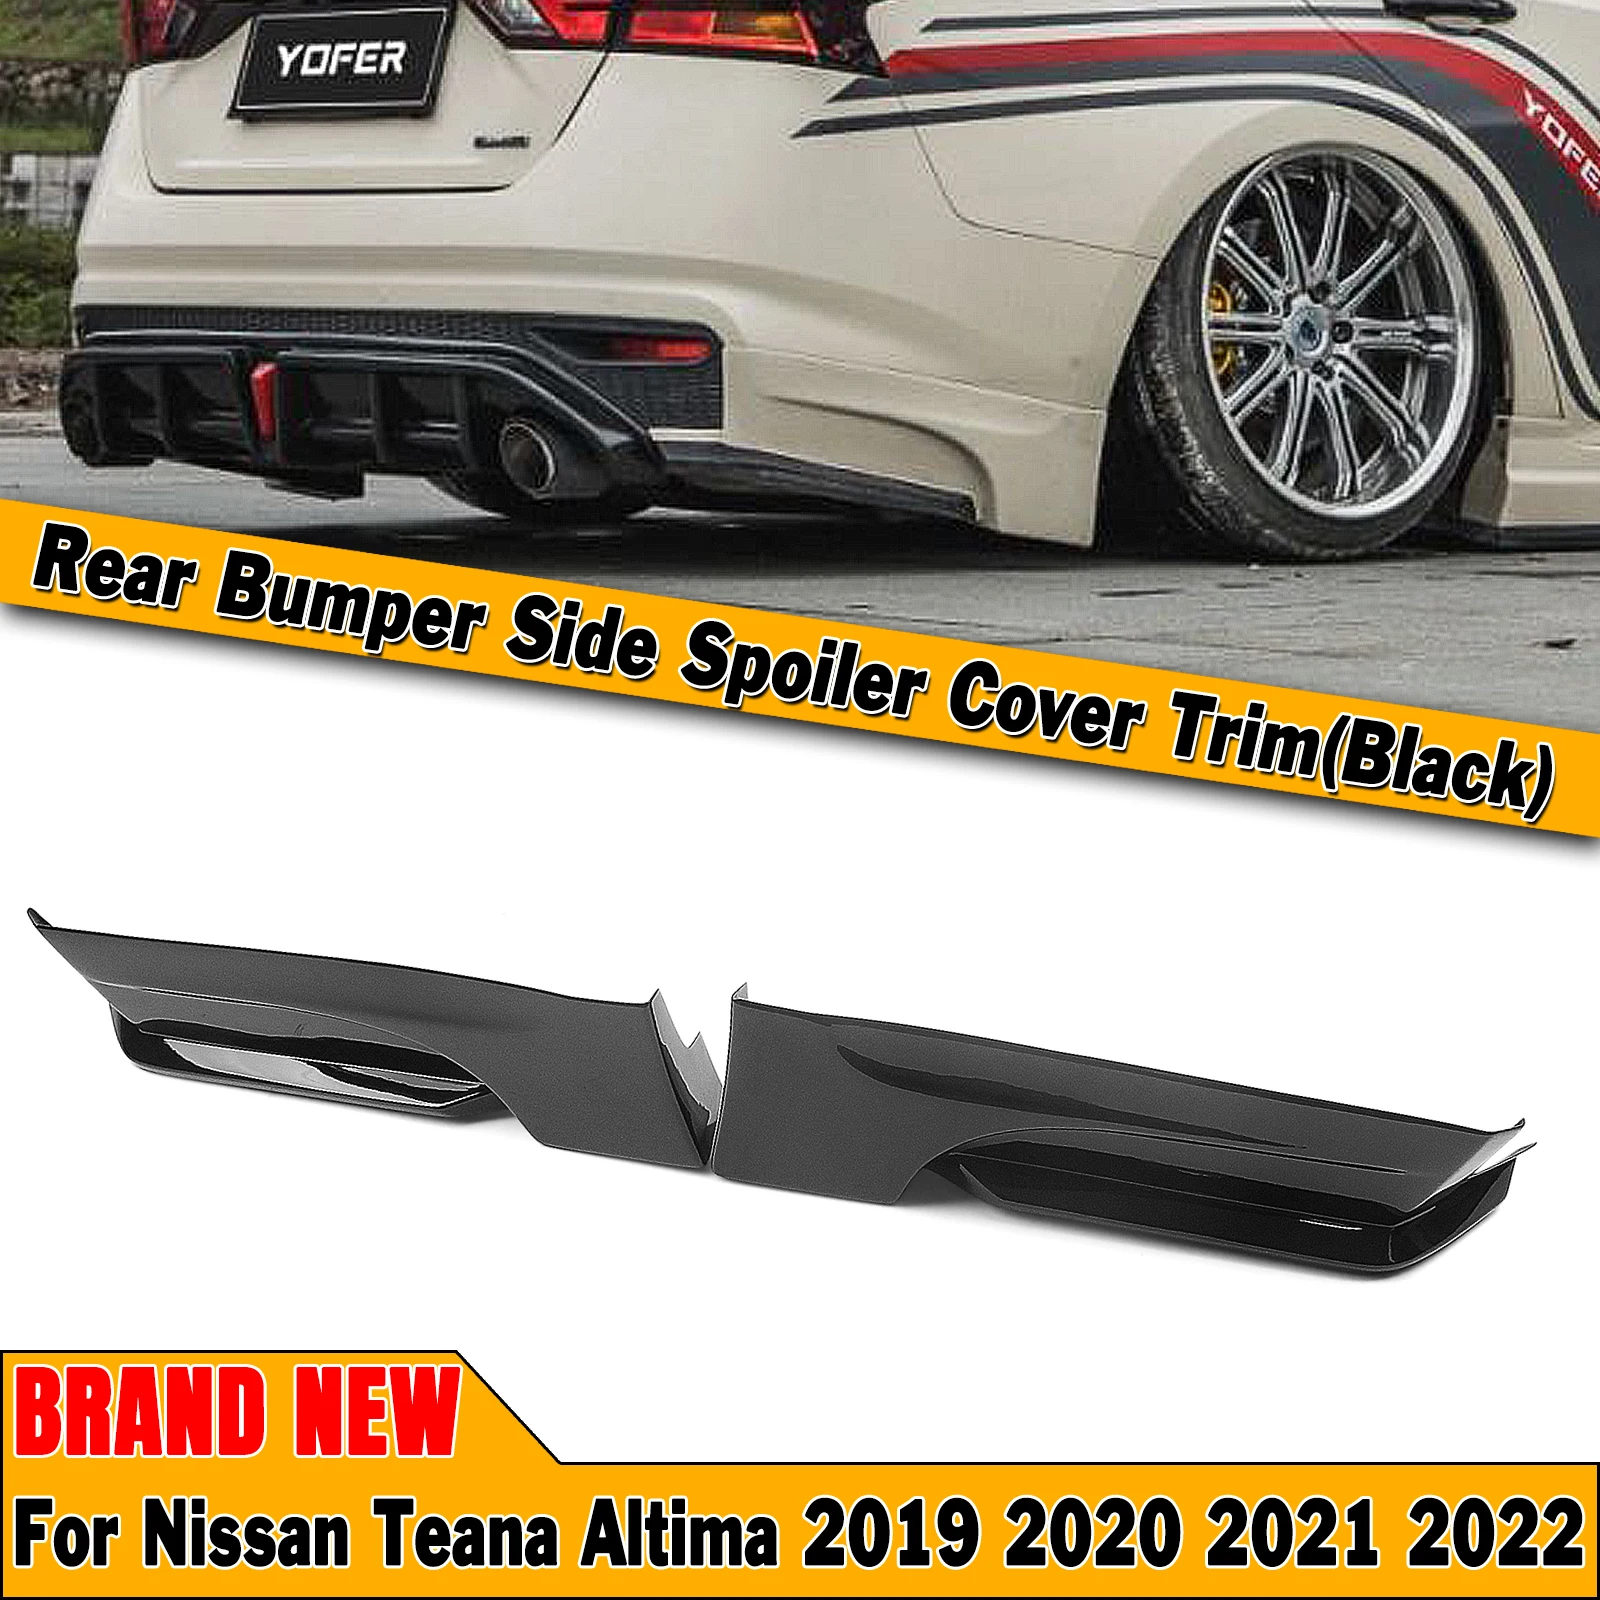 

YOFER Rear Bumper Side Splitter Cover Trim For Nissan Altima 2019-2022 Car Glossy Black Lower Spoiler Corner Skirt Protect Plate